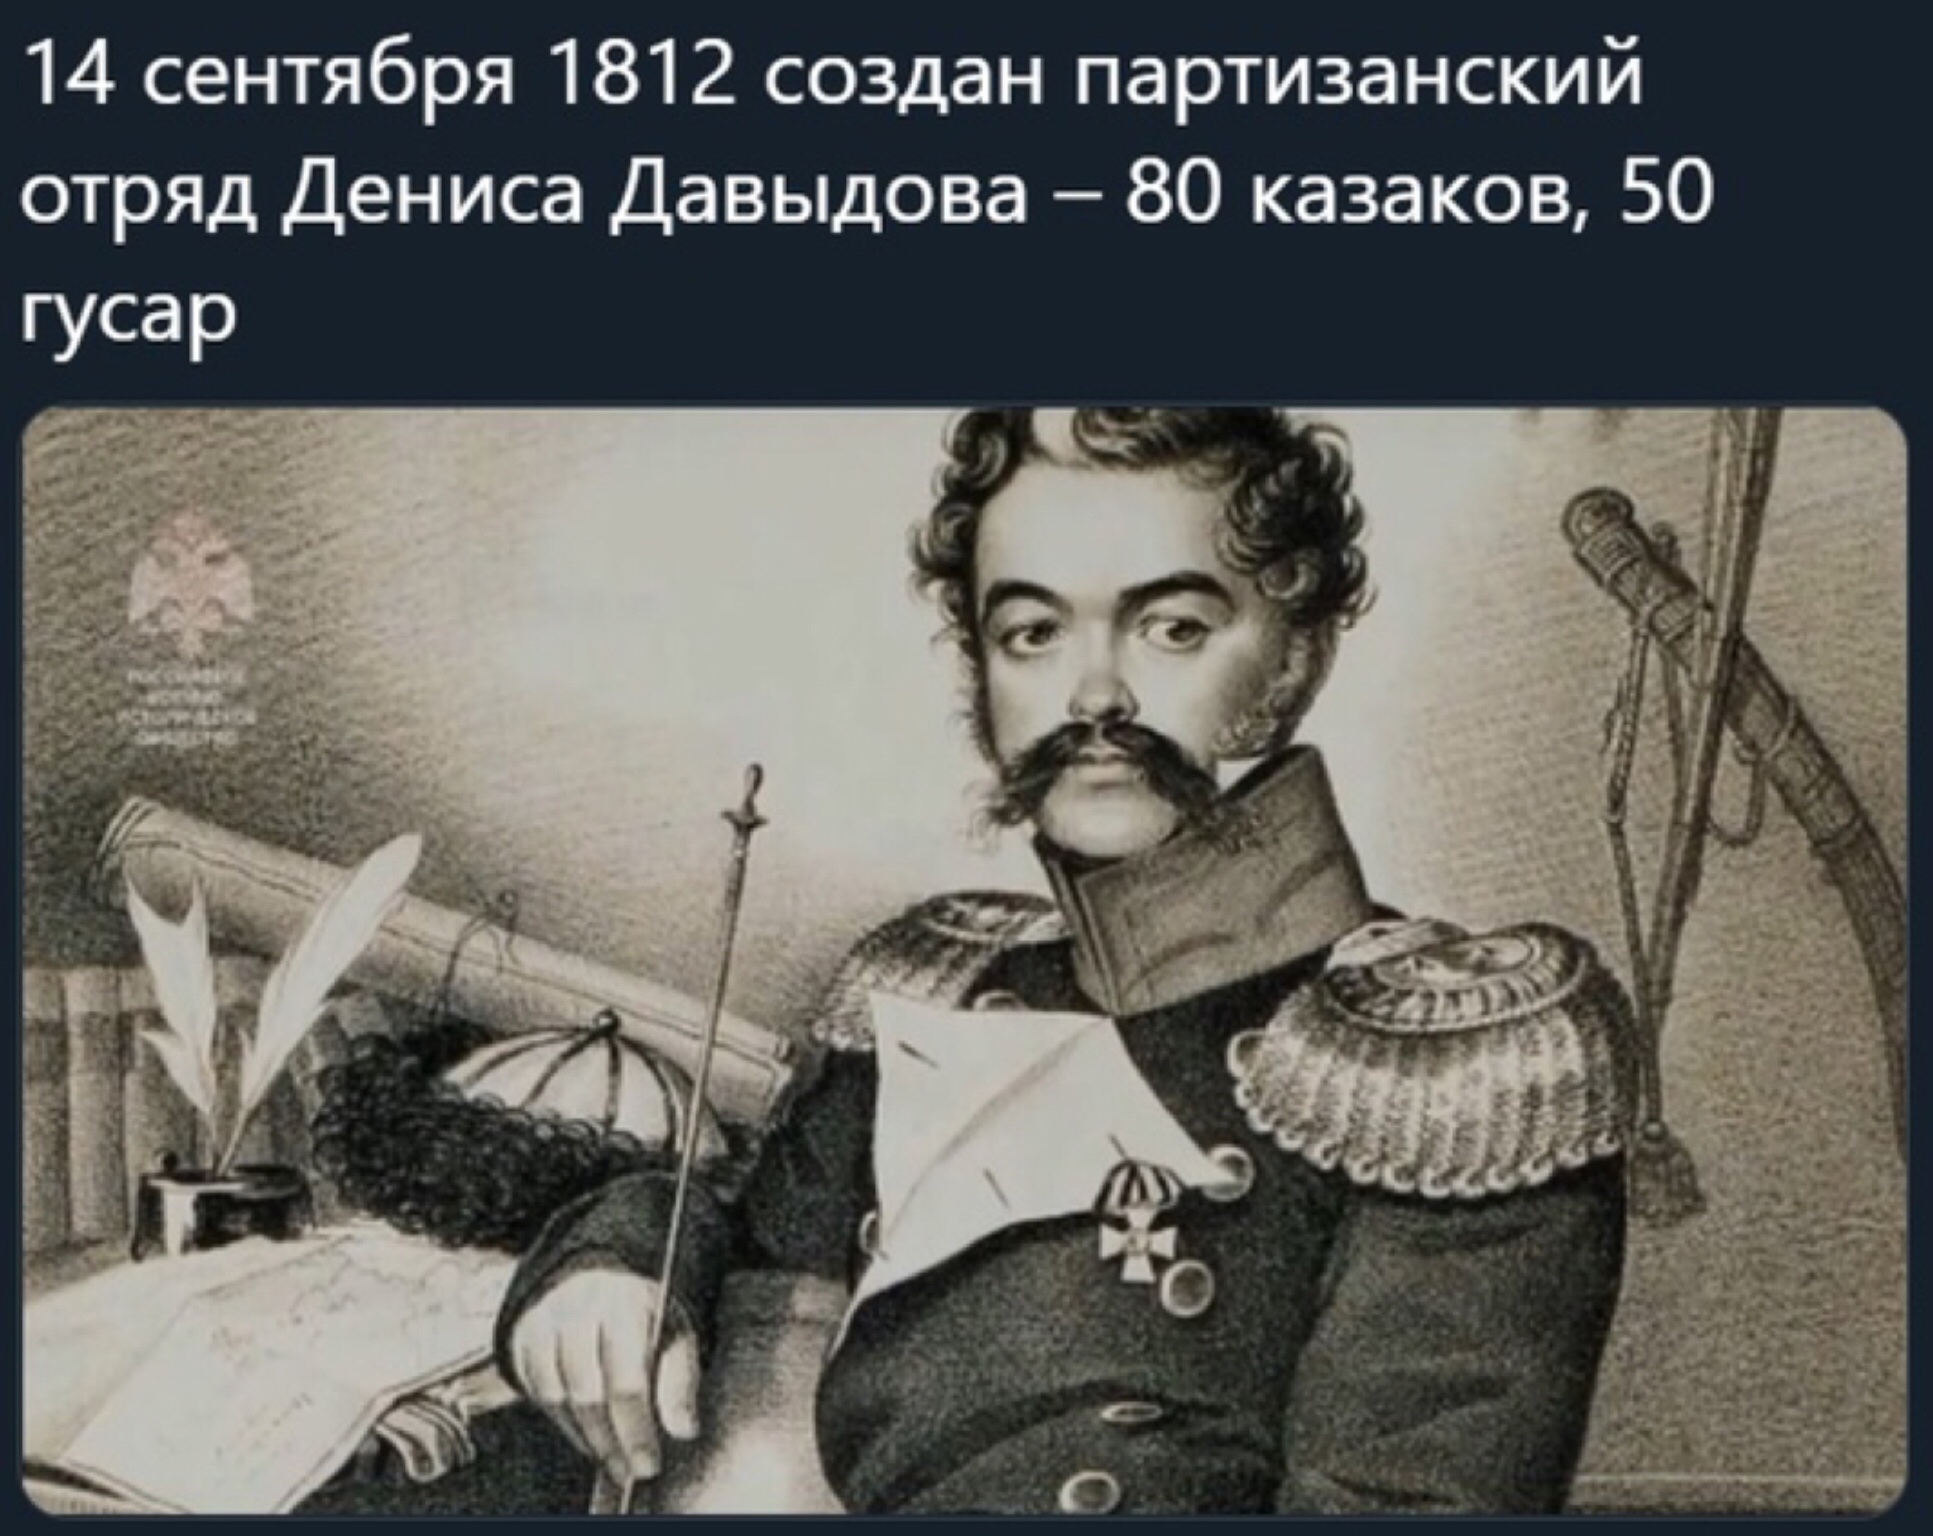 Денис Давыдов 1812